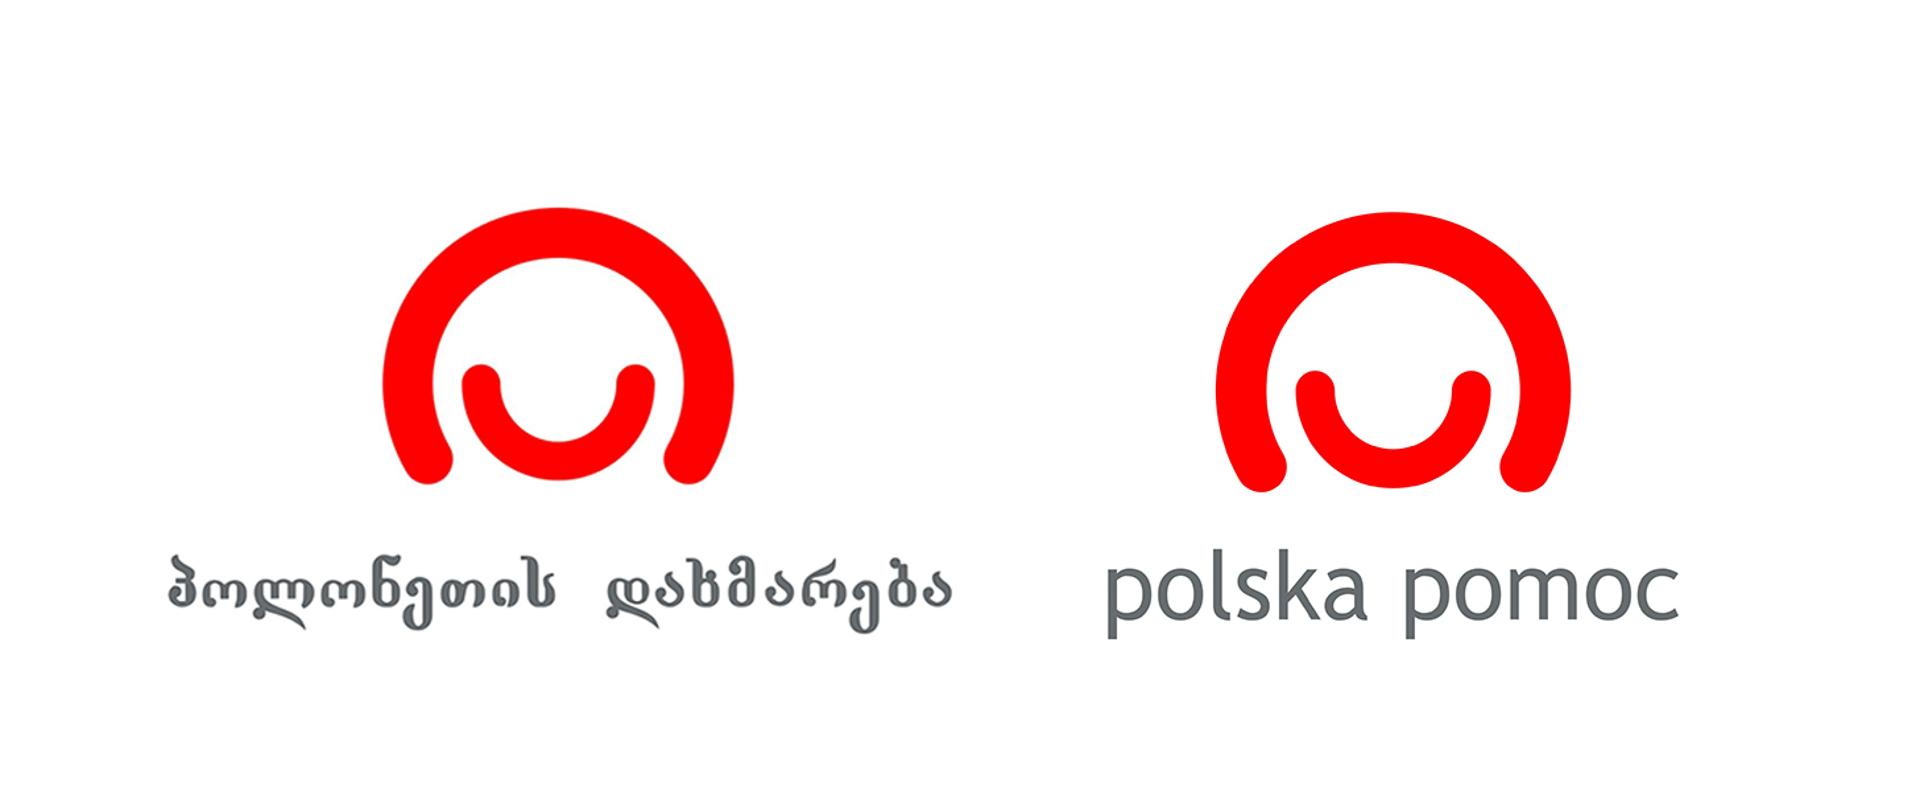 Baner zawierający logo programu współpracy w wersji gruzińskiej oraz polskiej 